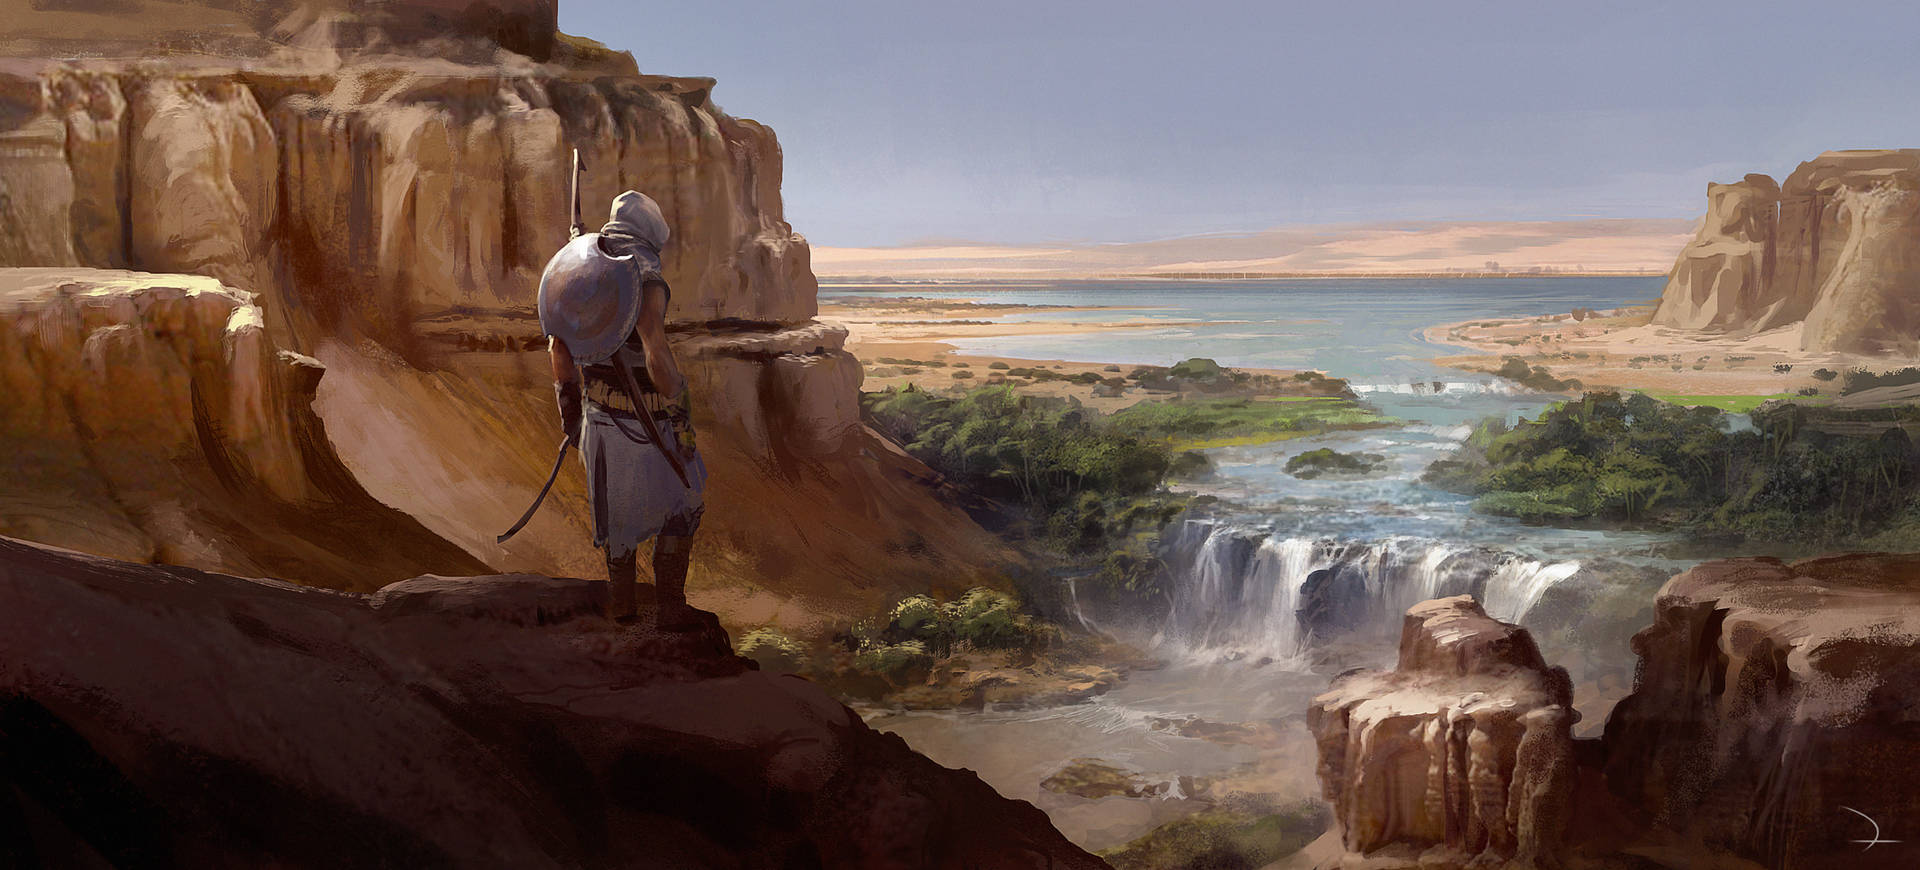 River Assassins Creed Origins Wallpaper